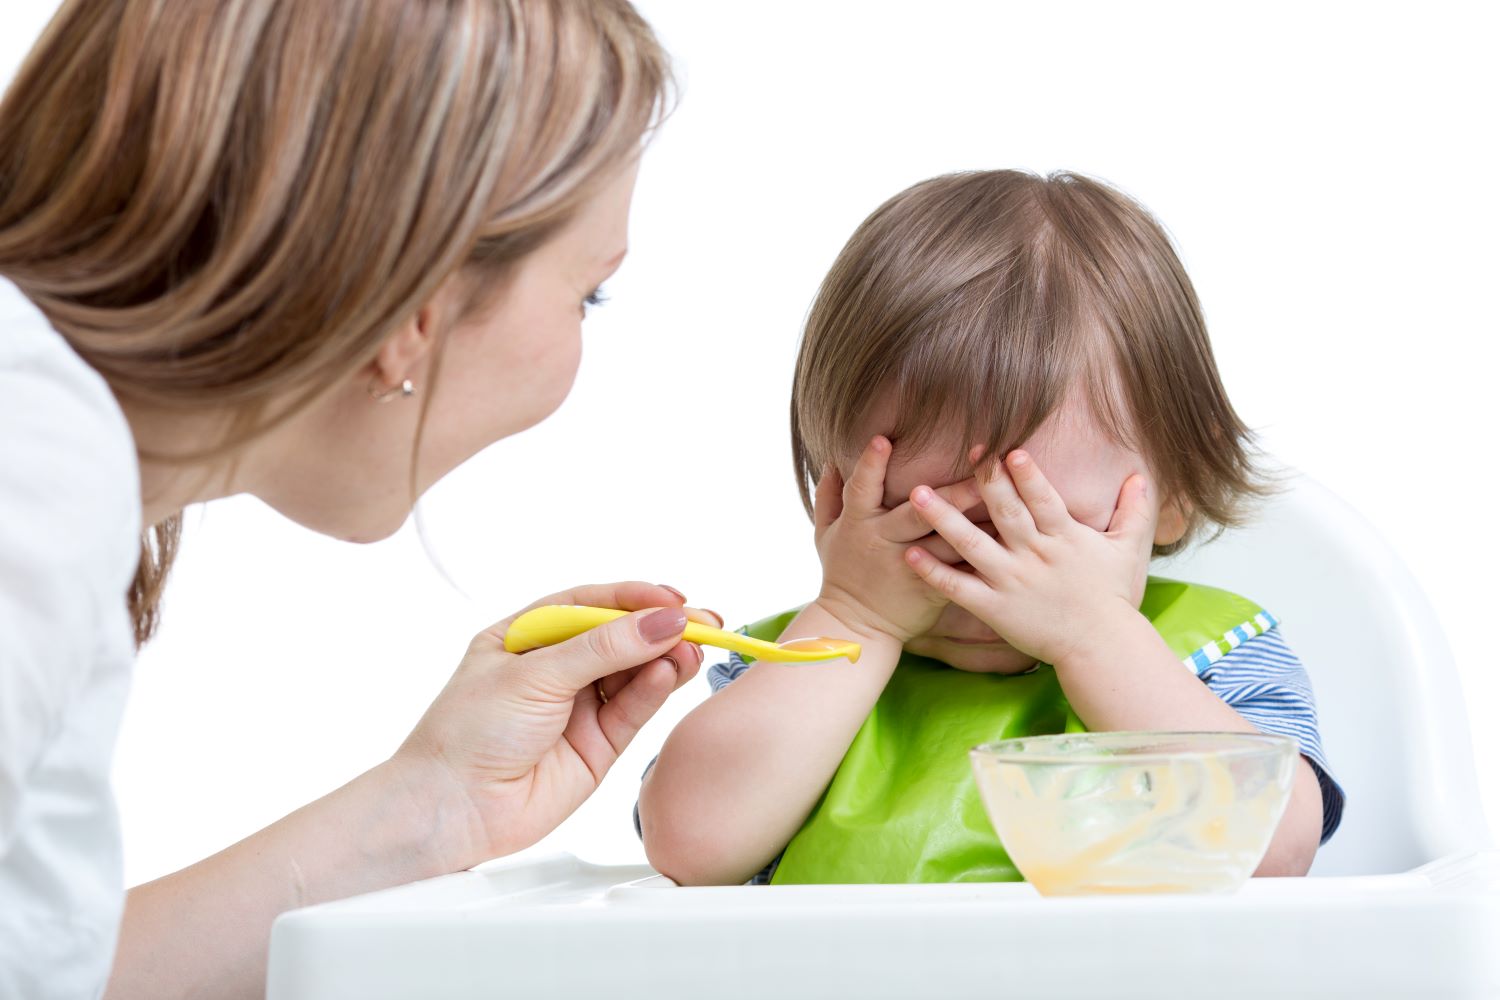 Produkty dla dzieci mających problemy z jedzeniem i apetytem